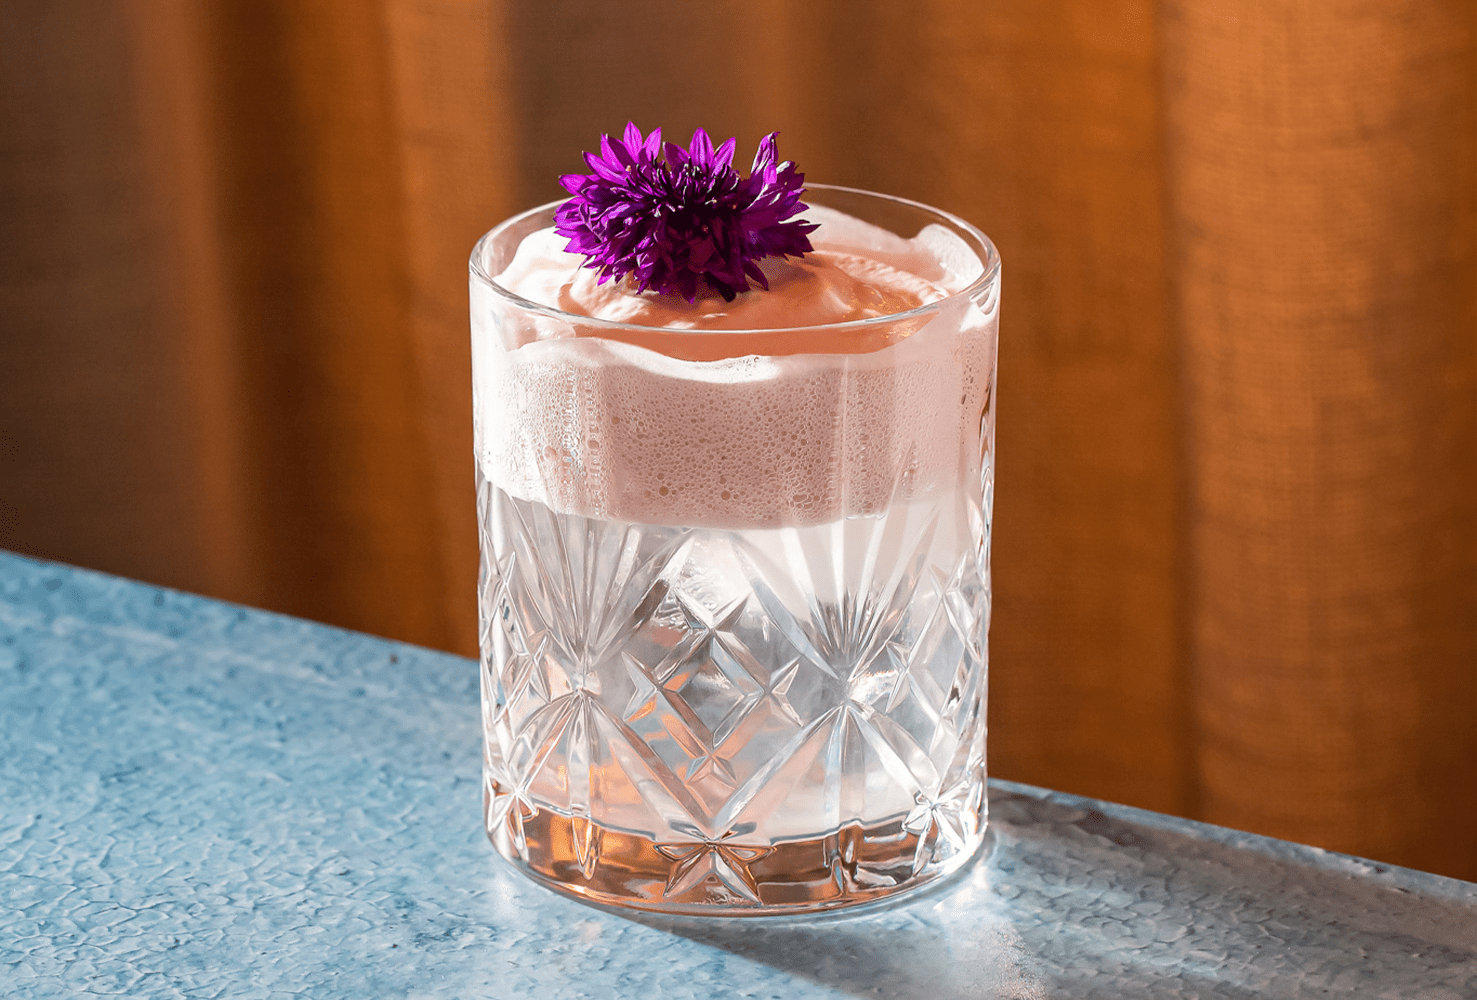 Coctel con espumoso servido en un elegante vaso de cristal adornado con una flor violeta.